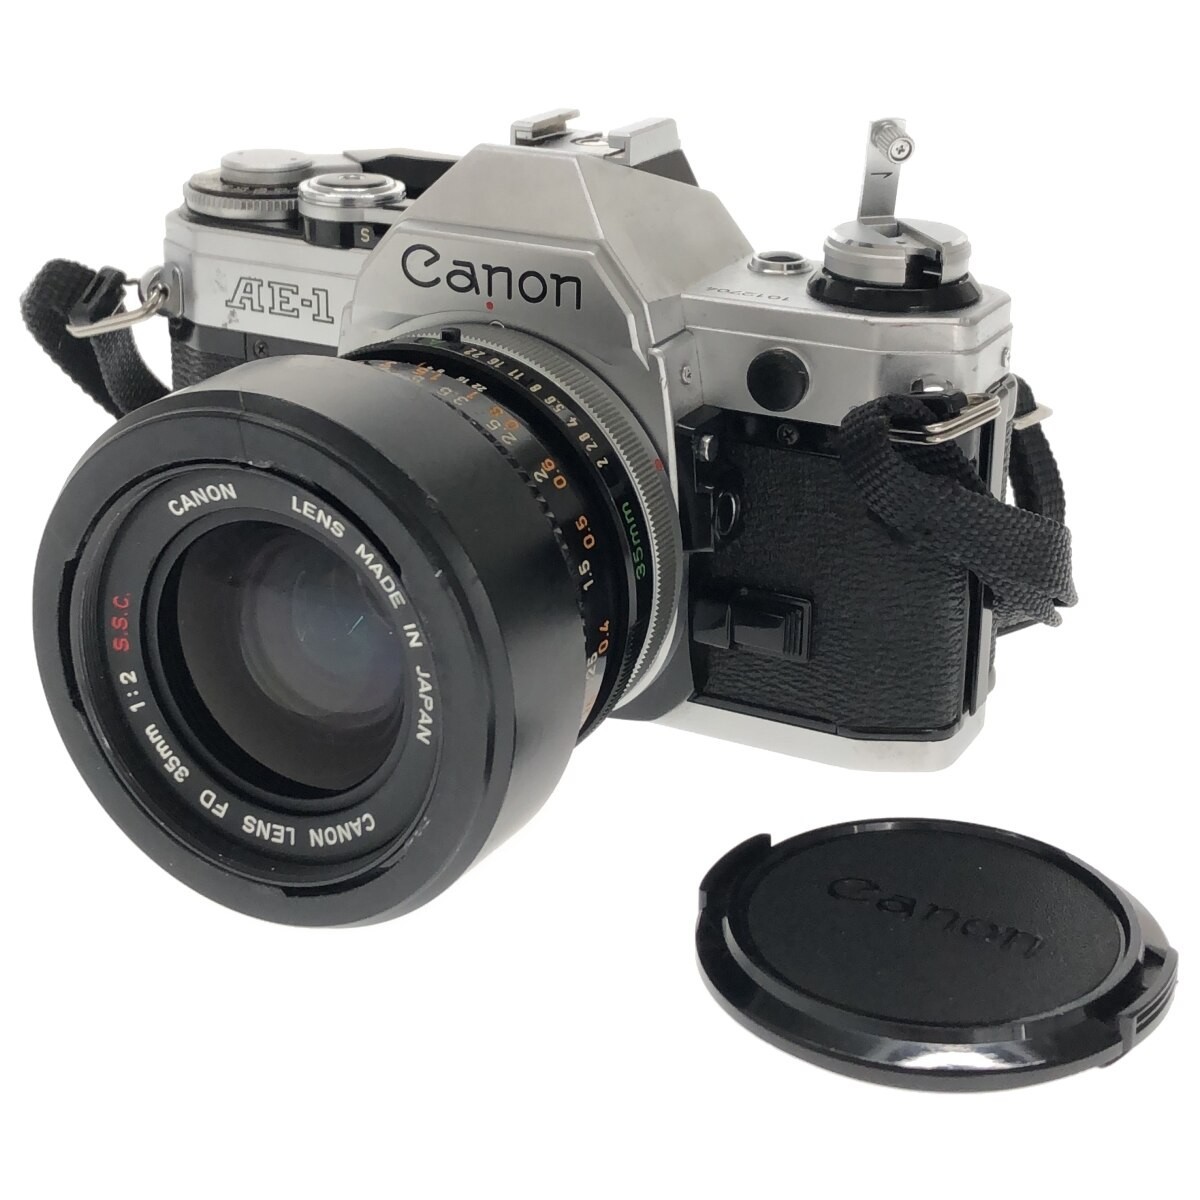 【完動品】Canon AE-1 LENS FD 35mm F2 S.S.C. SSC キャノン MF一眼レフ フィルムカメラ 大口径 広角単焦点レンズ 人気機種 鳴きなし C3642